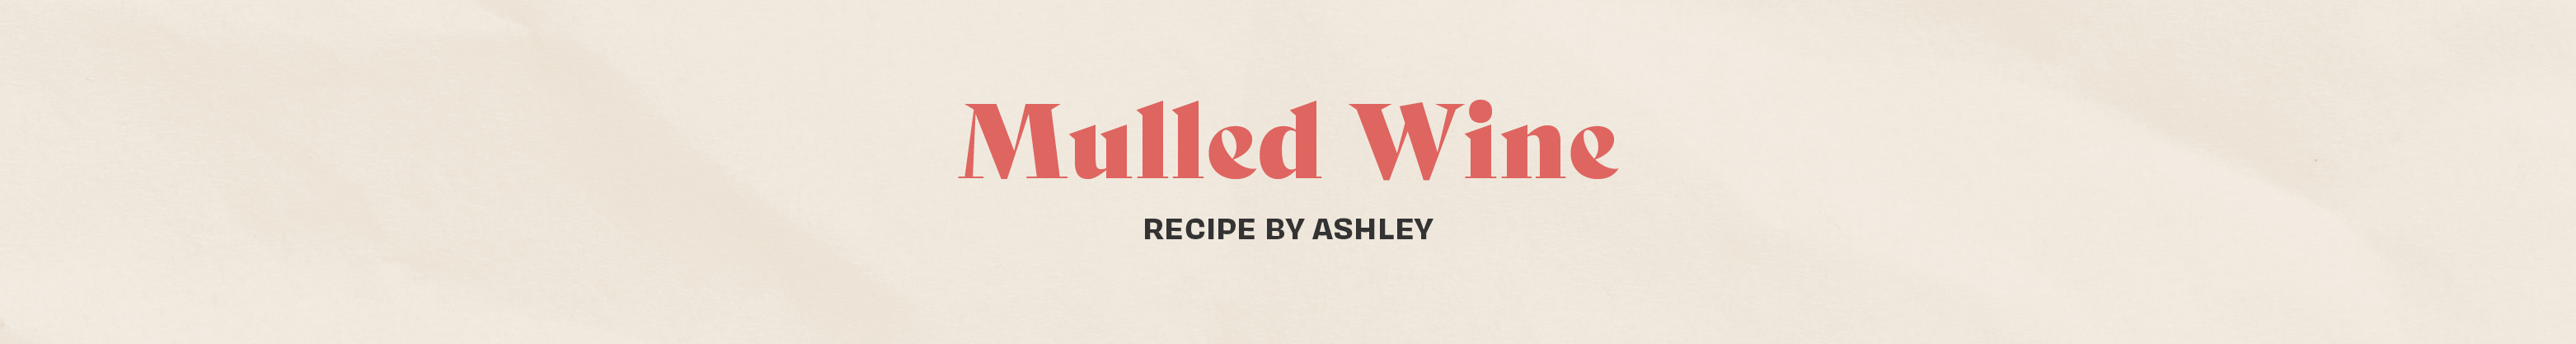 Ashley - Mulled Wine